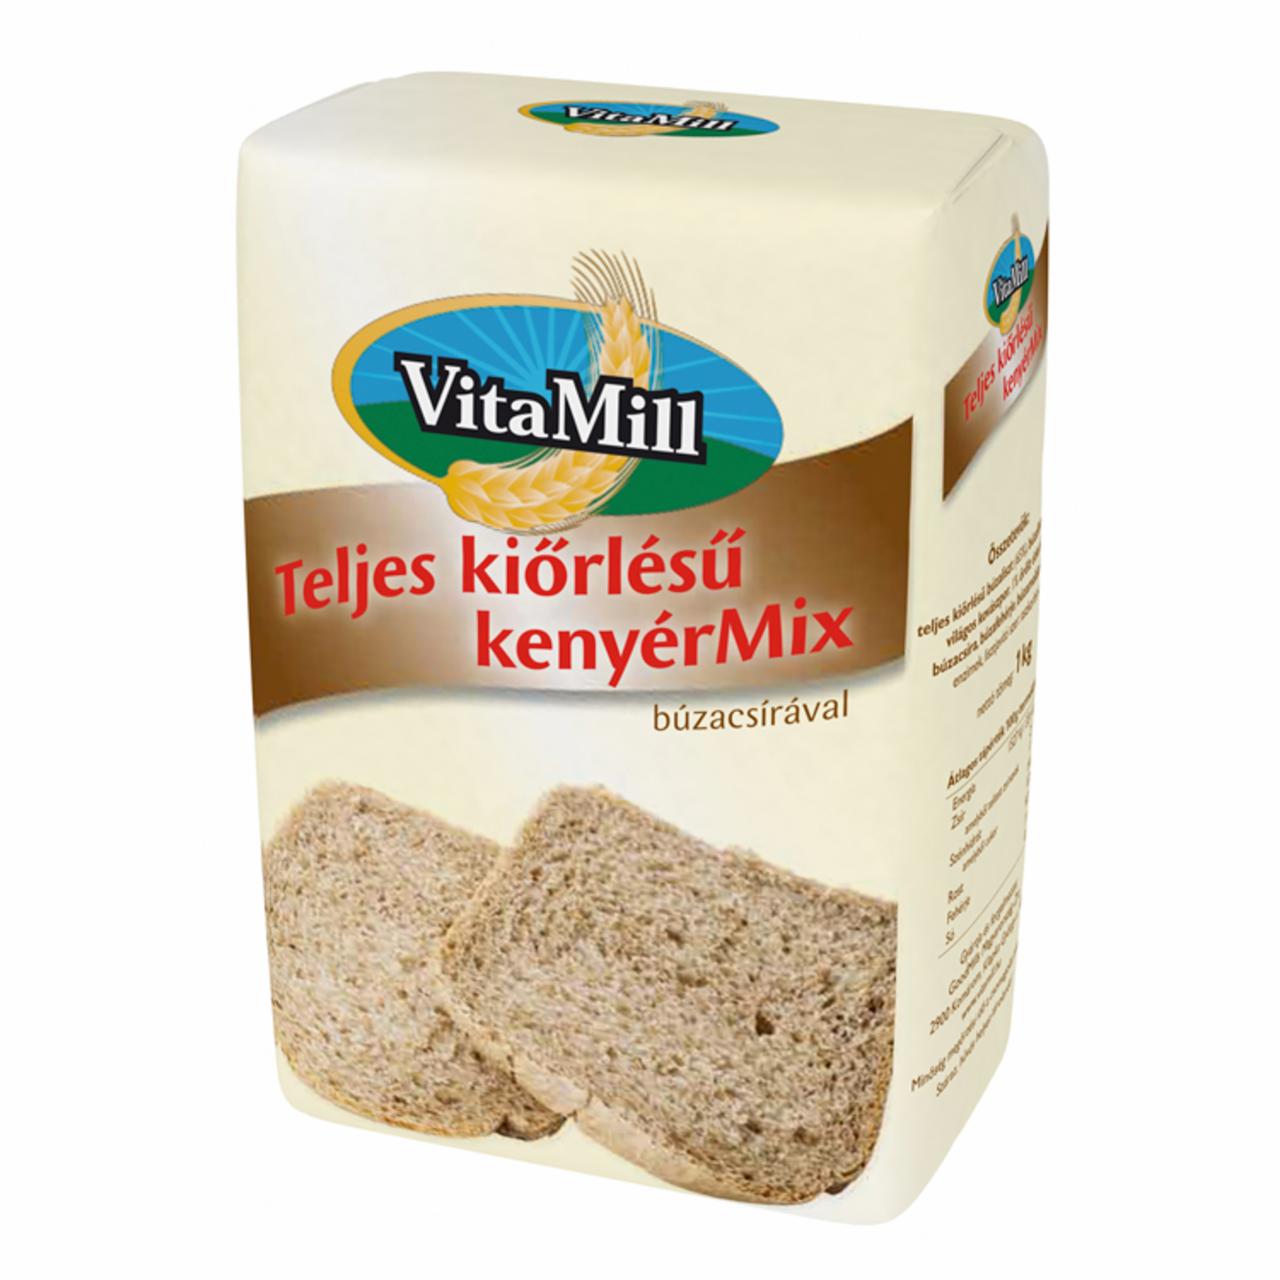 Képek - VitaMill teljes kiőrlésű kenyérMix búzacsírával 1 kg